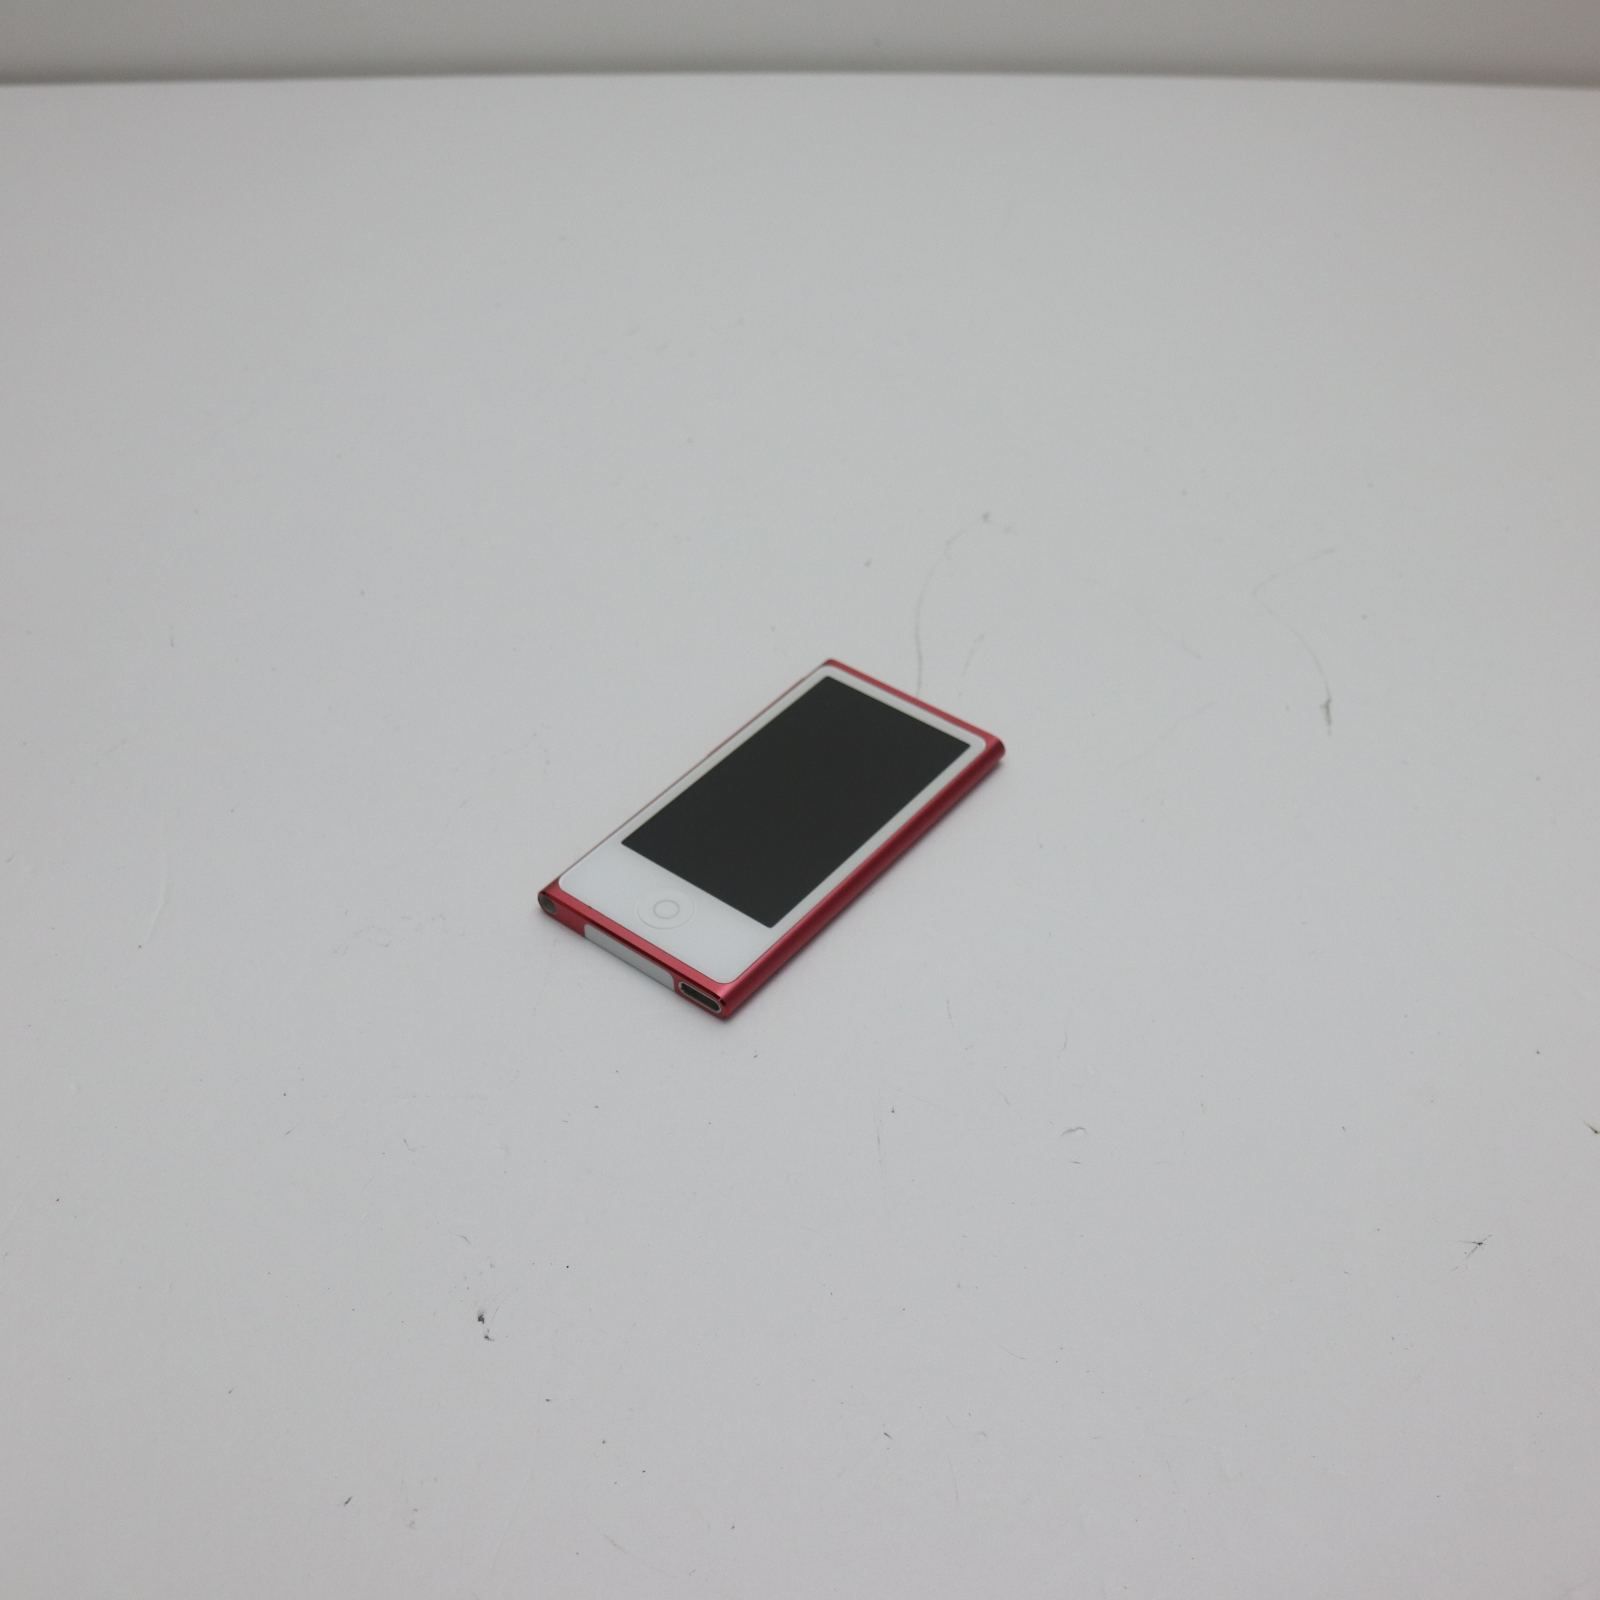 新品同様 iPod nano 第7世代 16GB ピンク 即日発送 MD475J/A MD475J/A ...